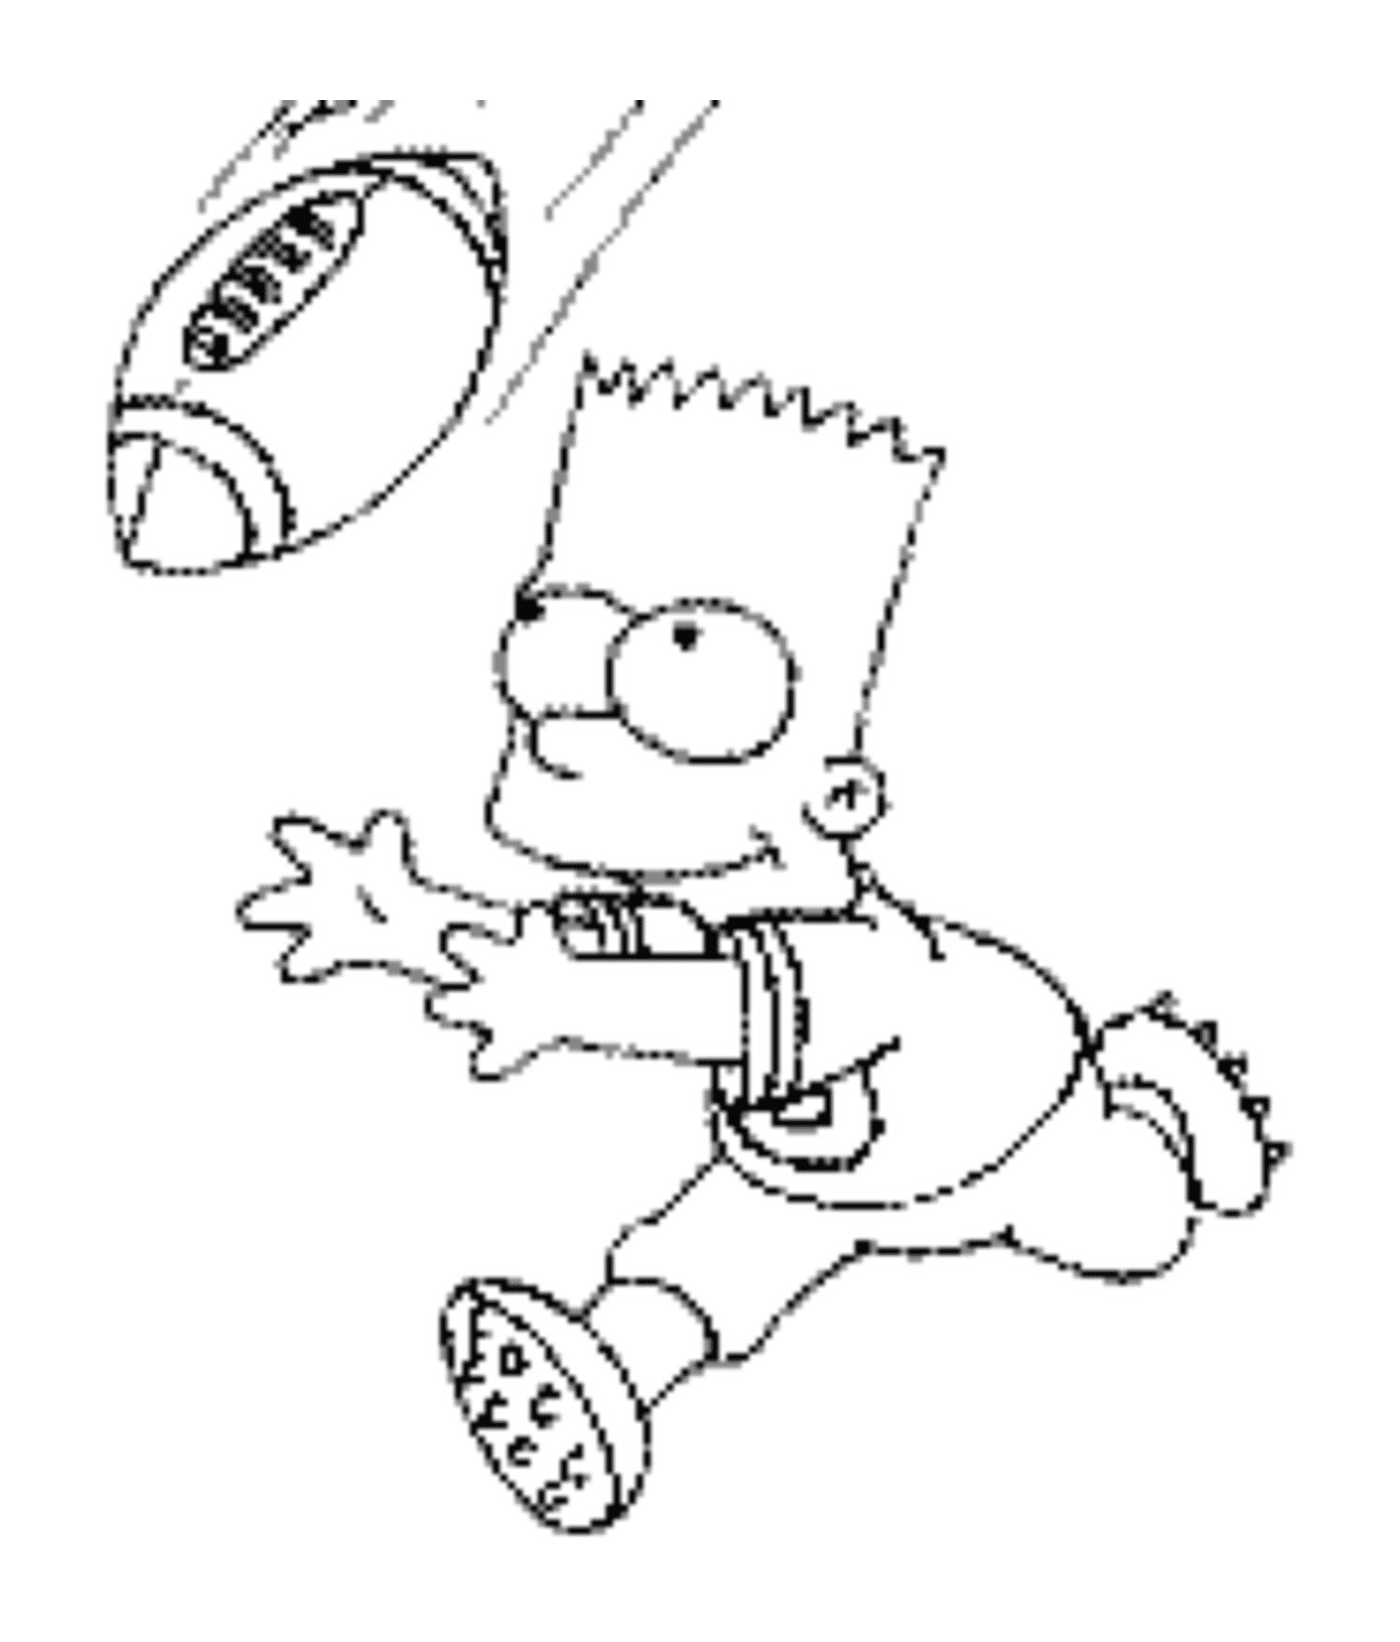   Bart joue au football américain 